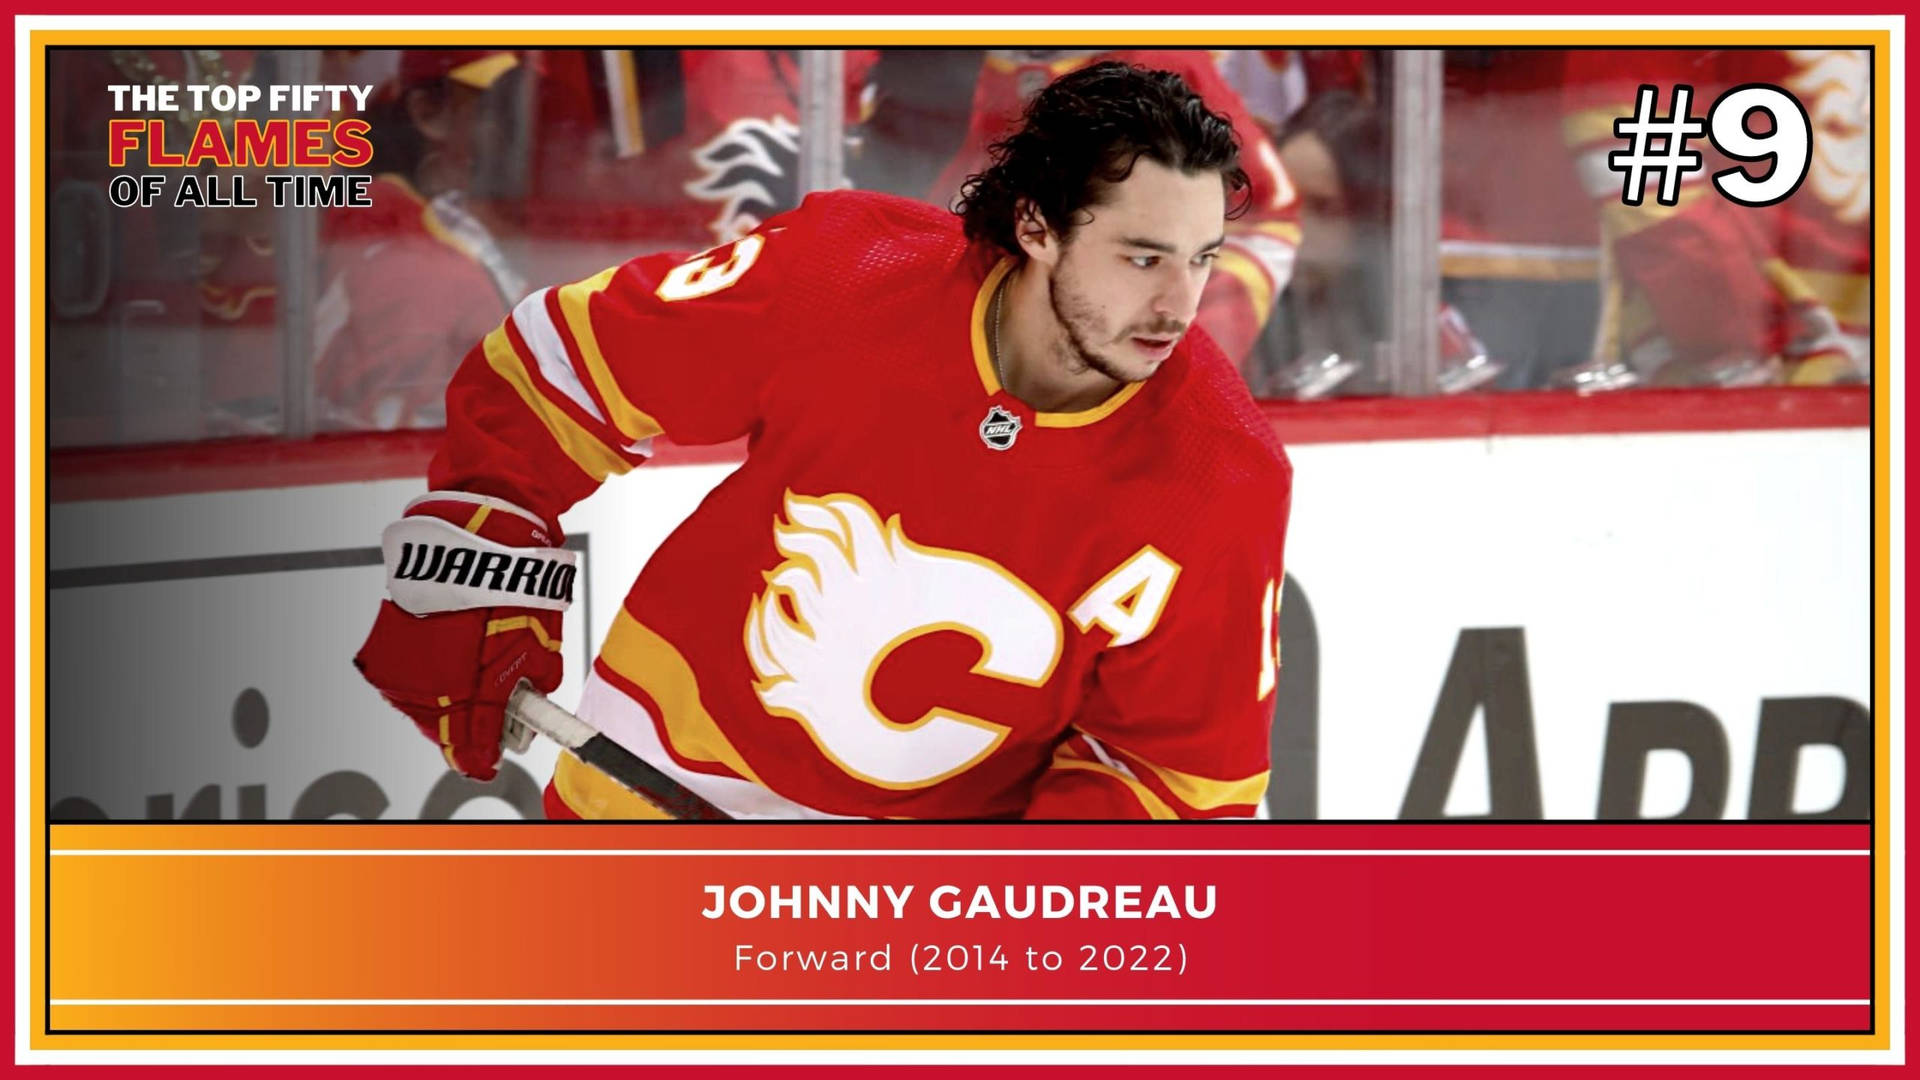 Johnnygaudreau Ishockey Spelare För Calgary Flames. Wallpaper